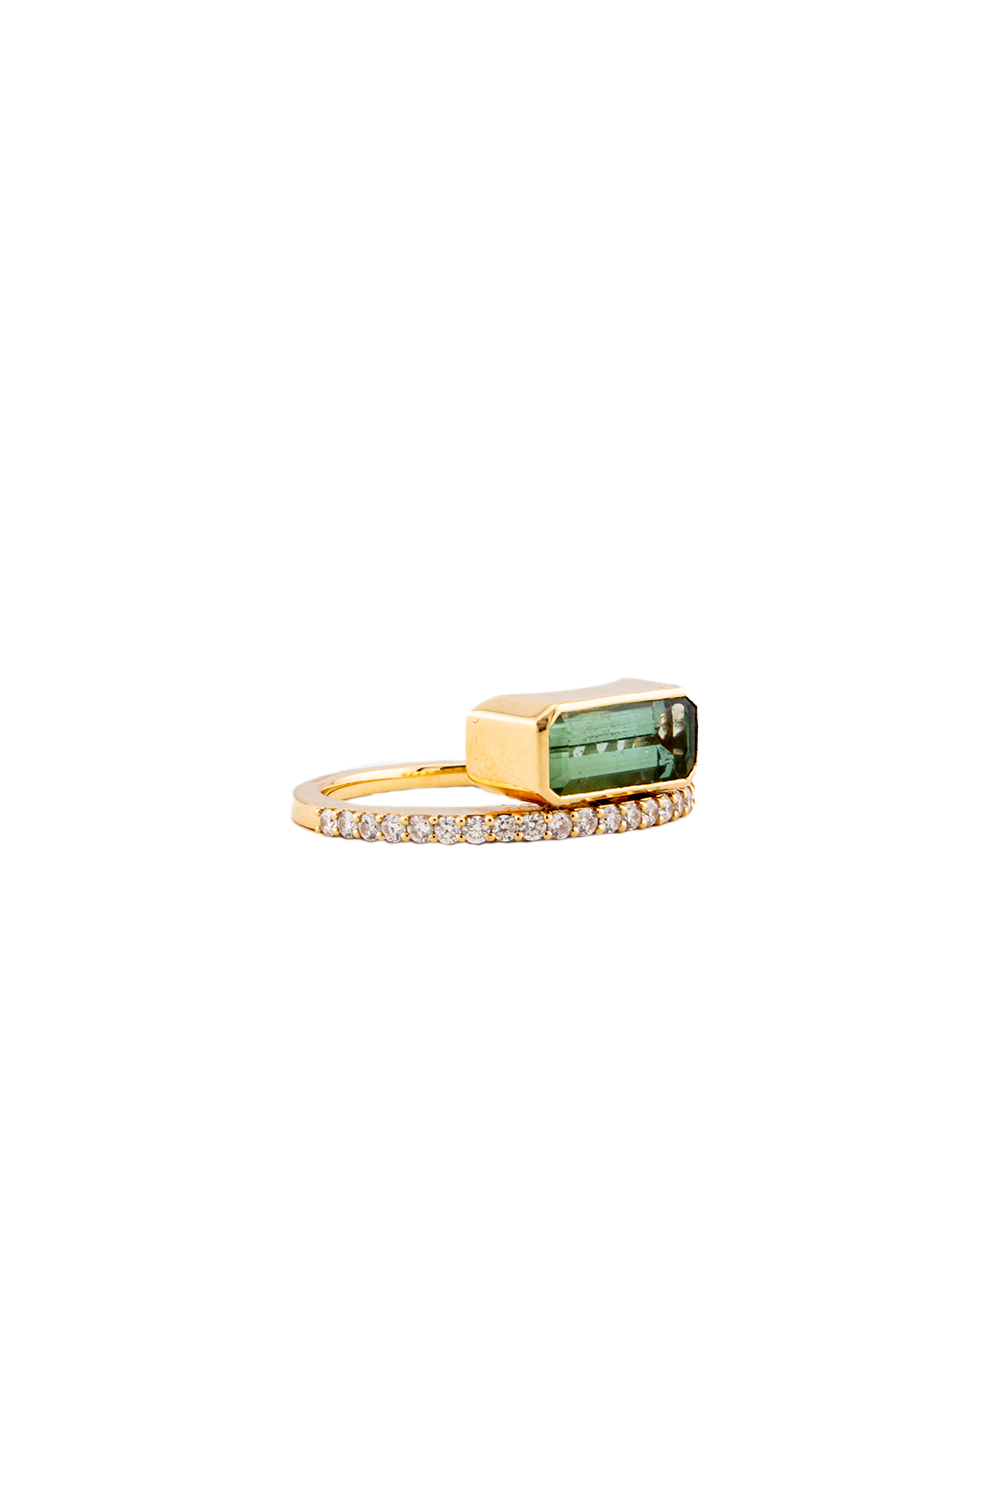 Emerald Cut Tourmaline Diamond Band Size 7 Ring